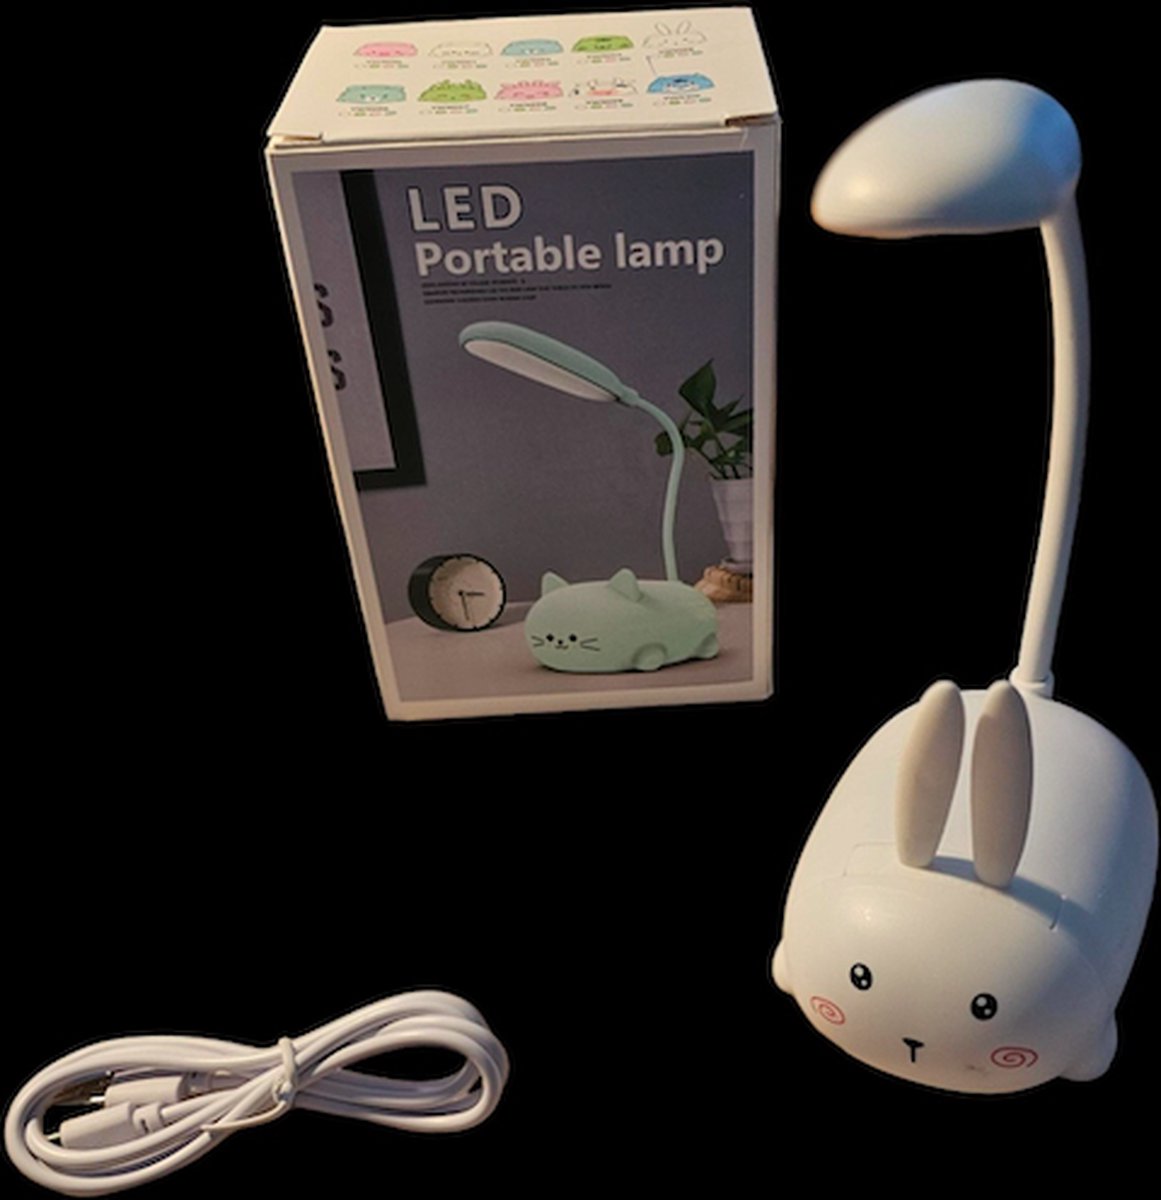 OGS - Kinder bureau lamp - Konijnen lamp wit - Lamp van konijn - Led lamp - Bureau licht - Kinderkamer lamp - Leeslamp - konijnen Leeslamp